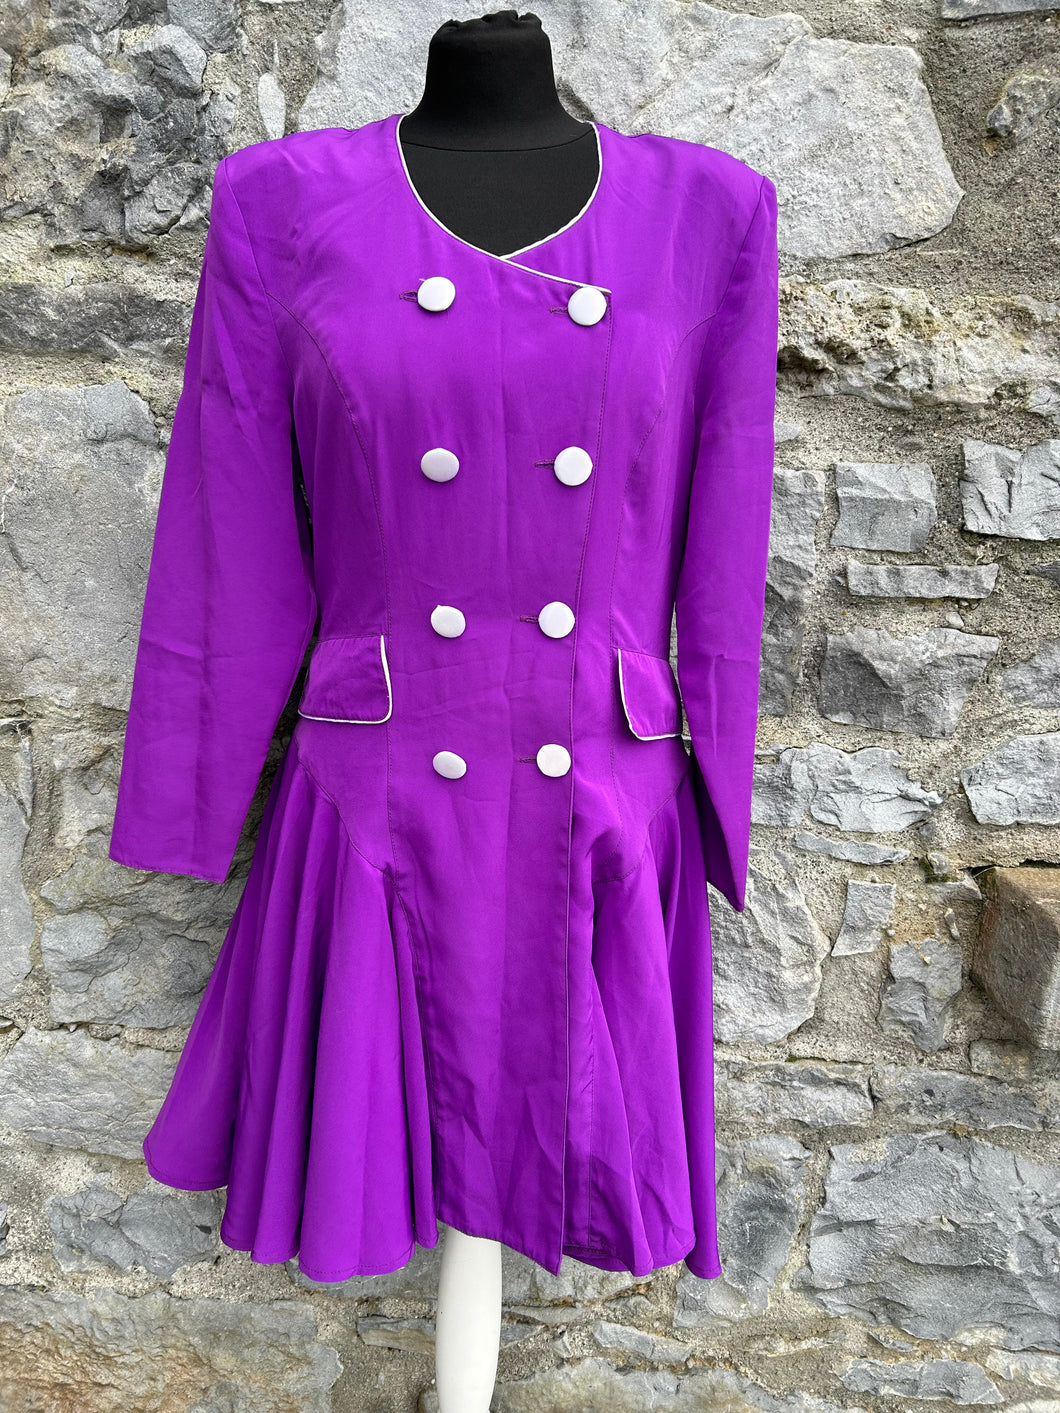 80s purple dress uk 8-10